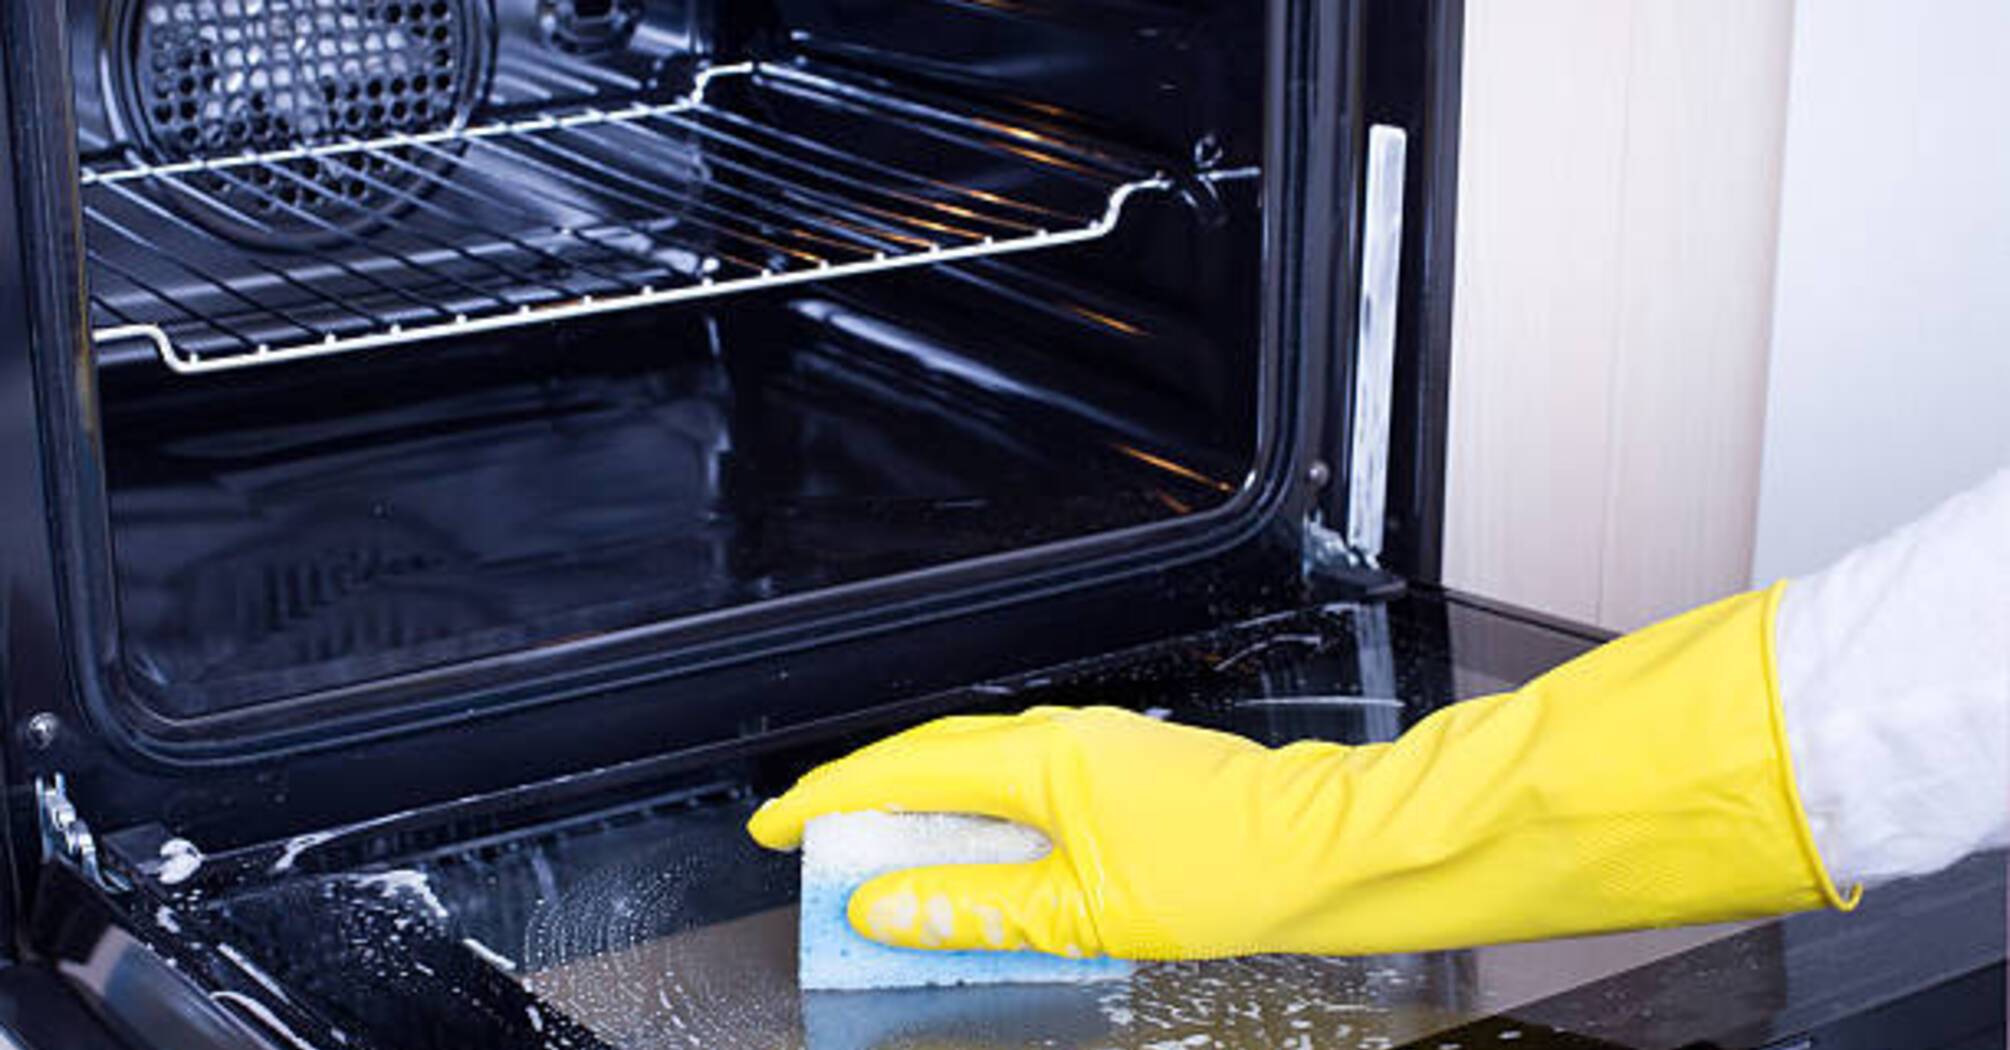 Як ефективно очистити духовку, якщо немає соди або оцту